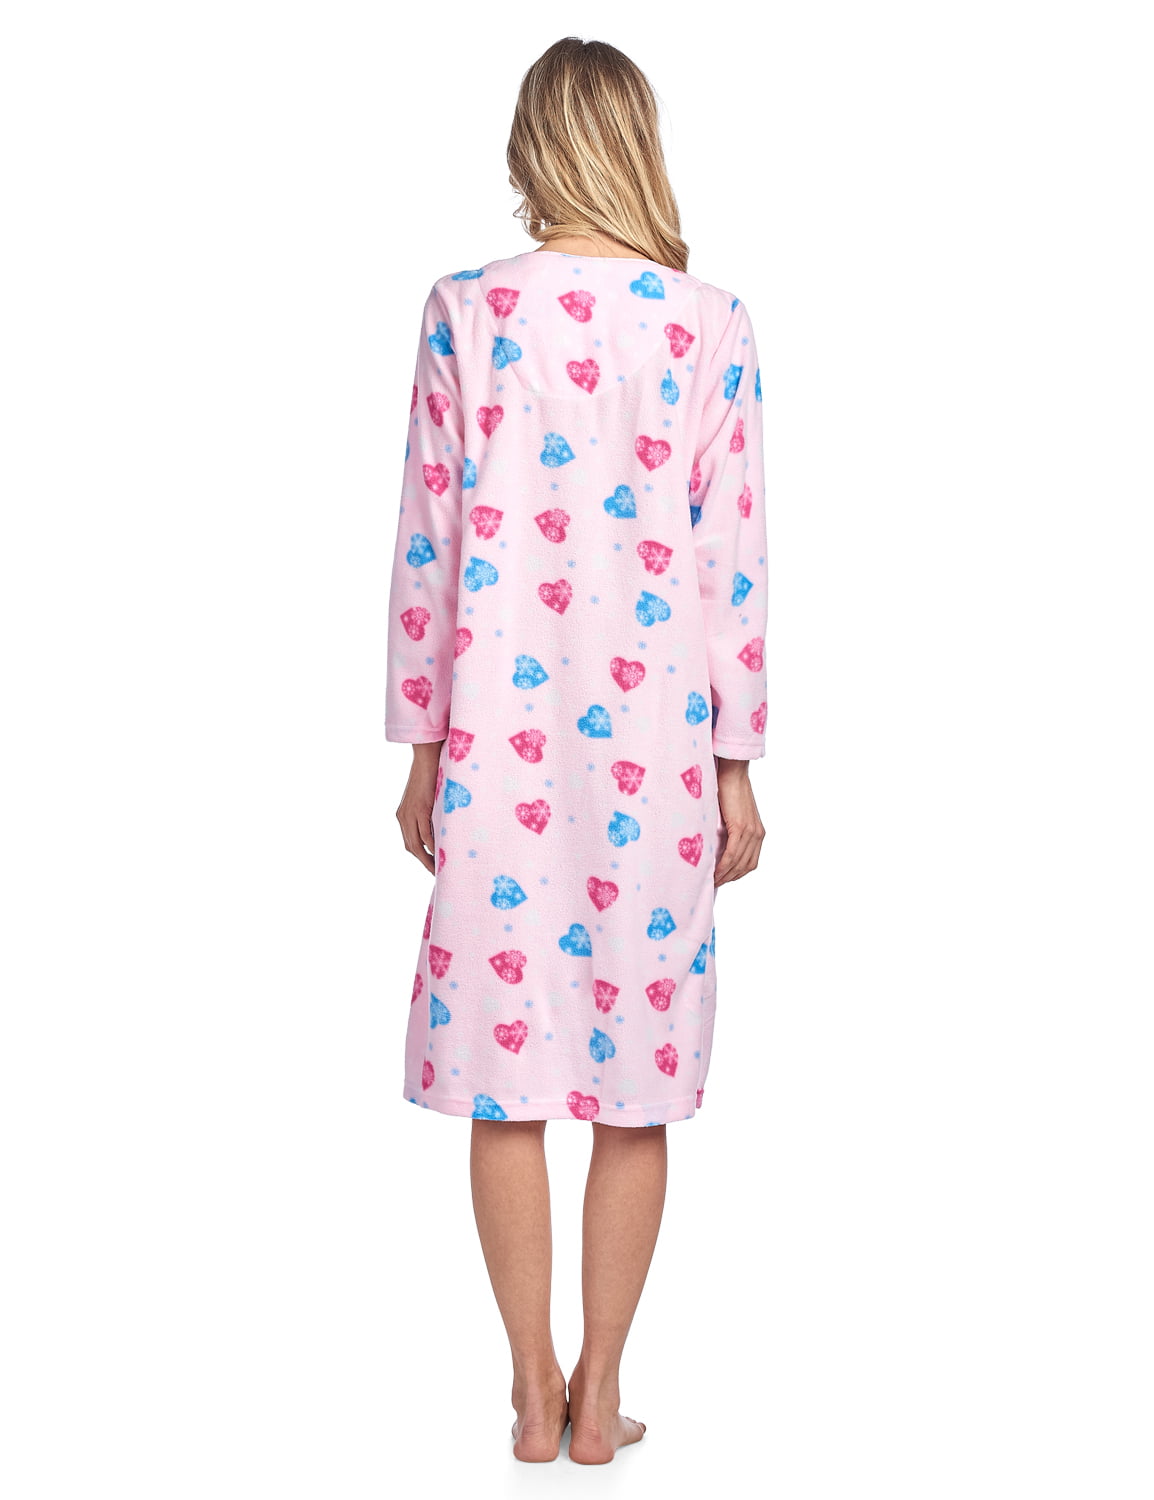 Casual Nights Womens Printed Micro Fleece Zip Up Long Sleeve Sleepwear Duster Robe